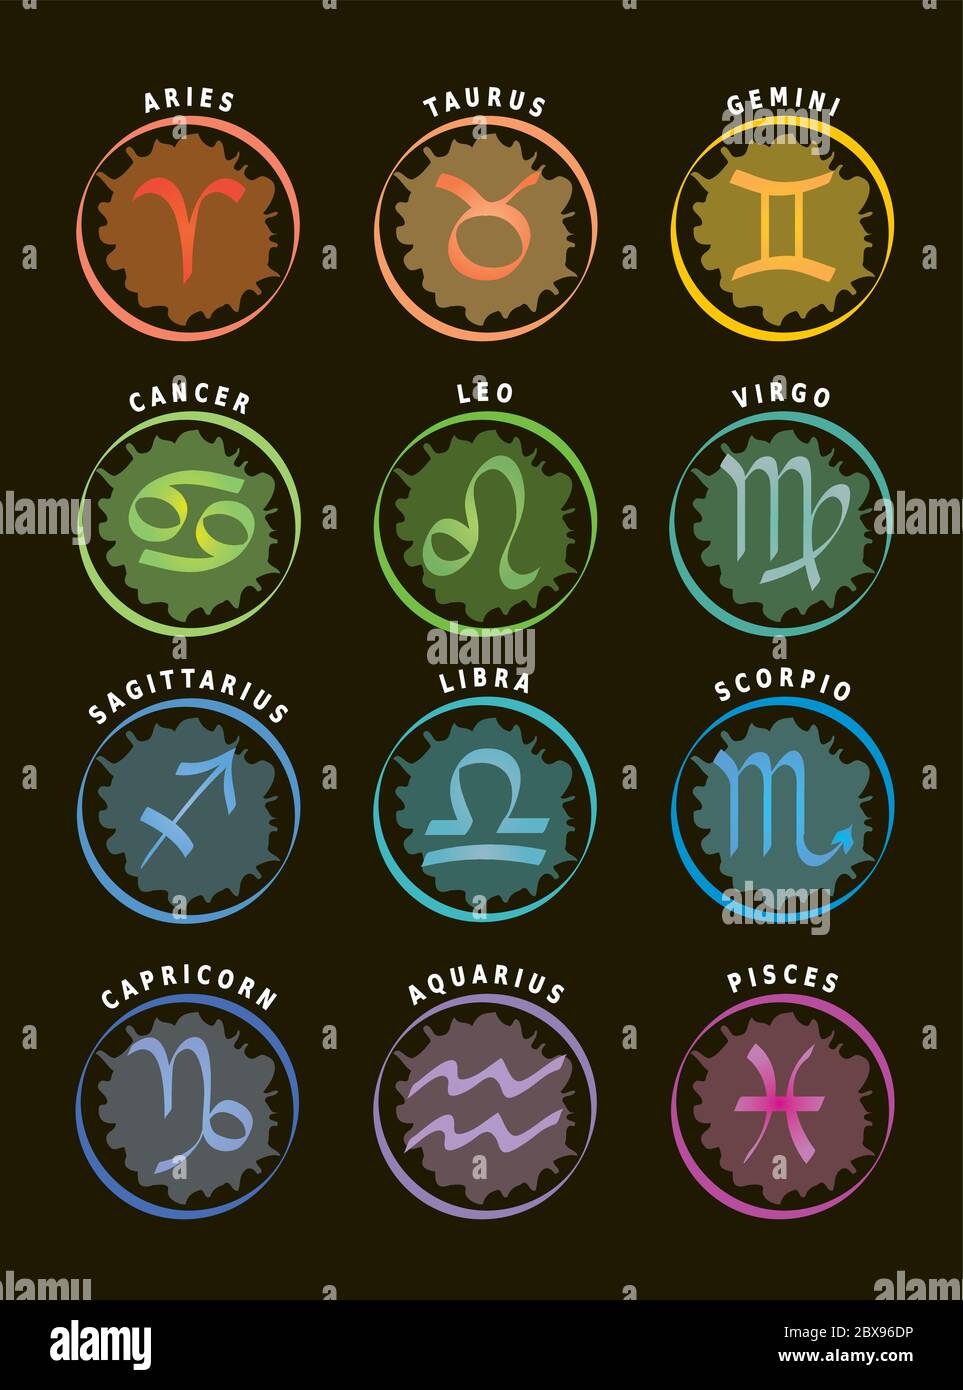 Signes du zodiaque, douze icônes d'astrologie avec des noms en anglais,  fond noir Image Vectorielle Stock - Alamy